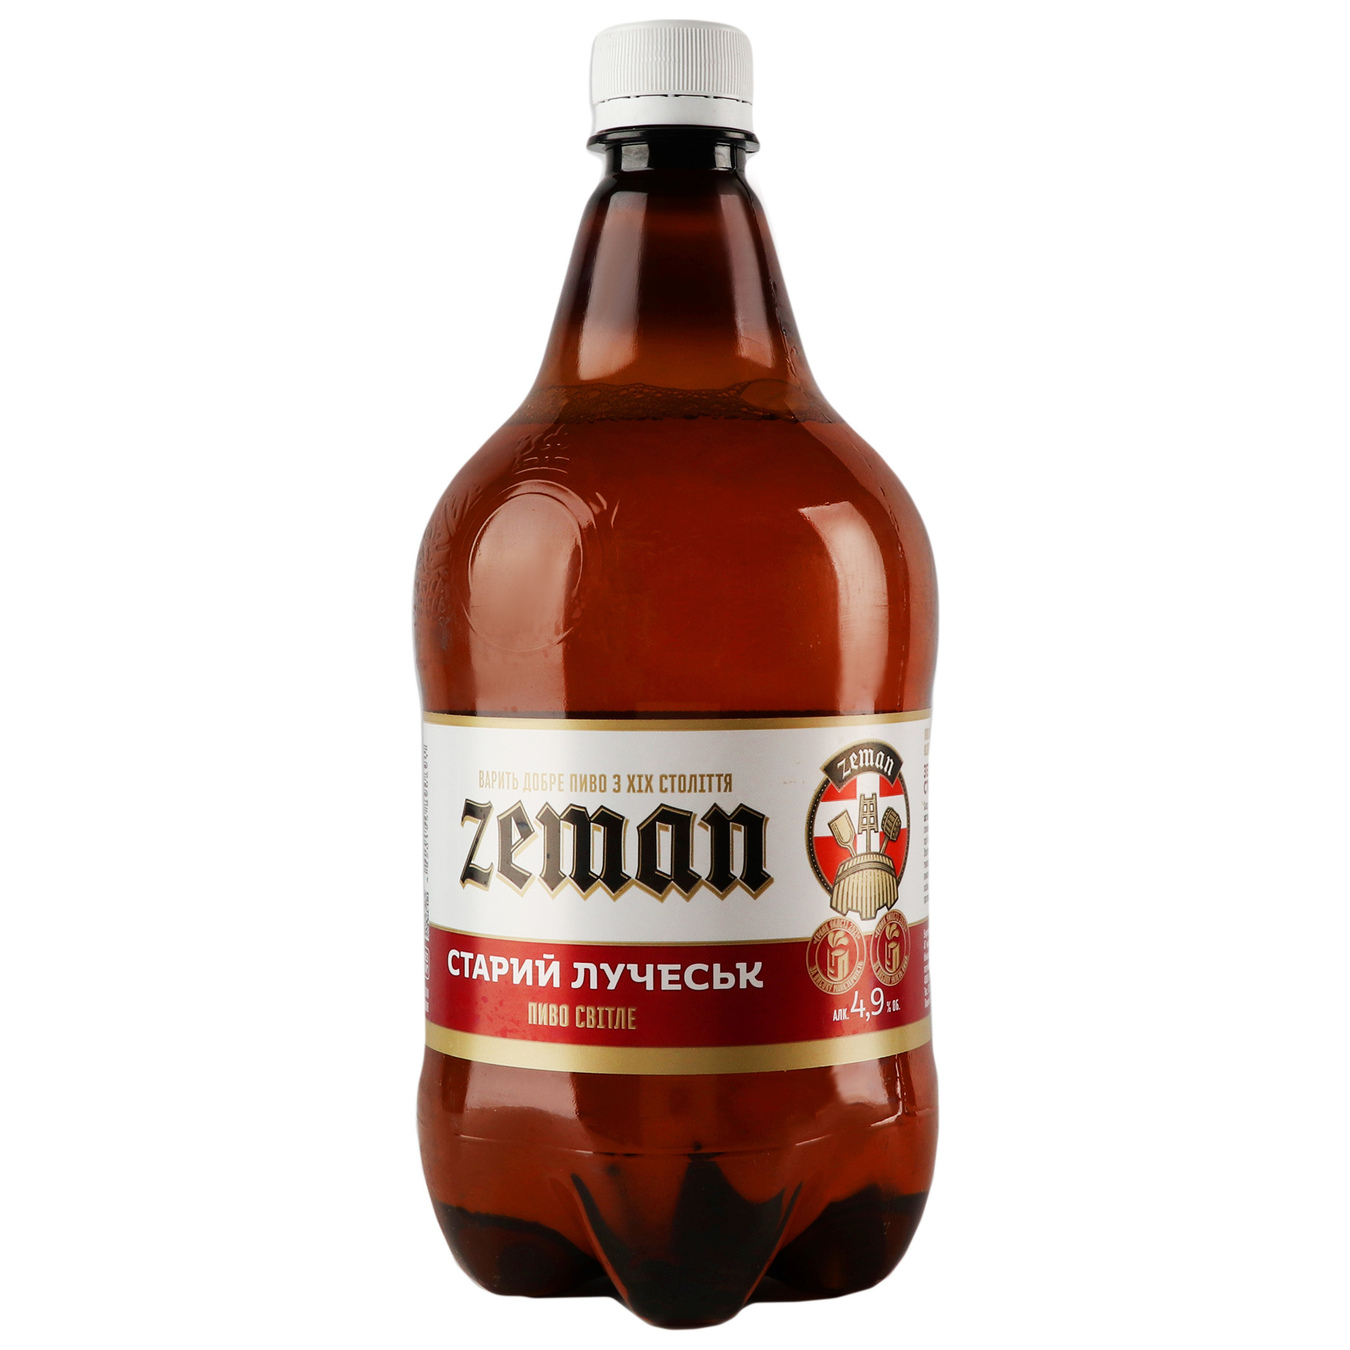 Light beer Zeman Stary Luchesk 4.9% 1 liter plastic bottle